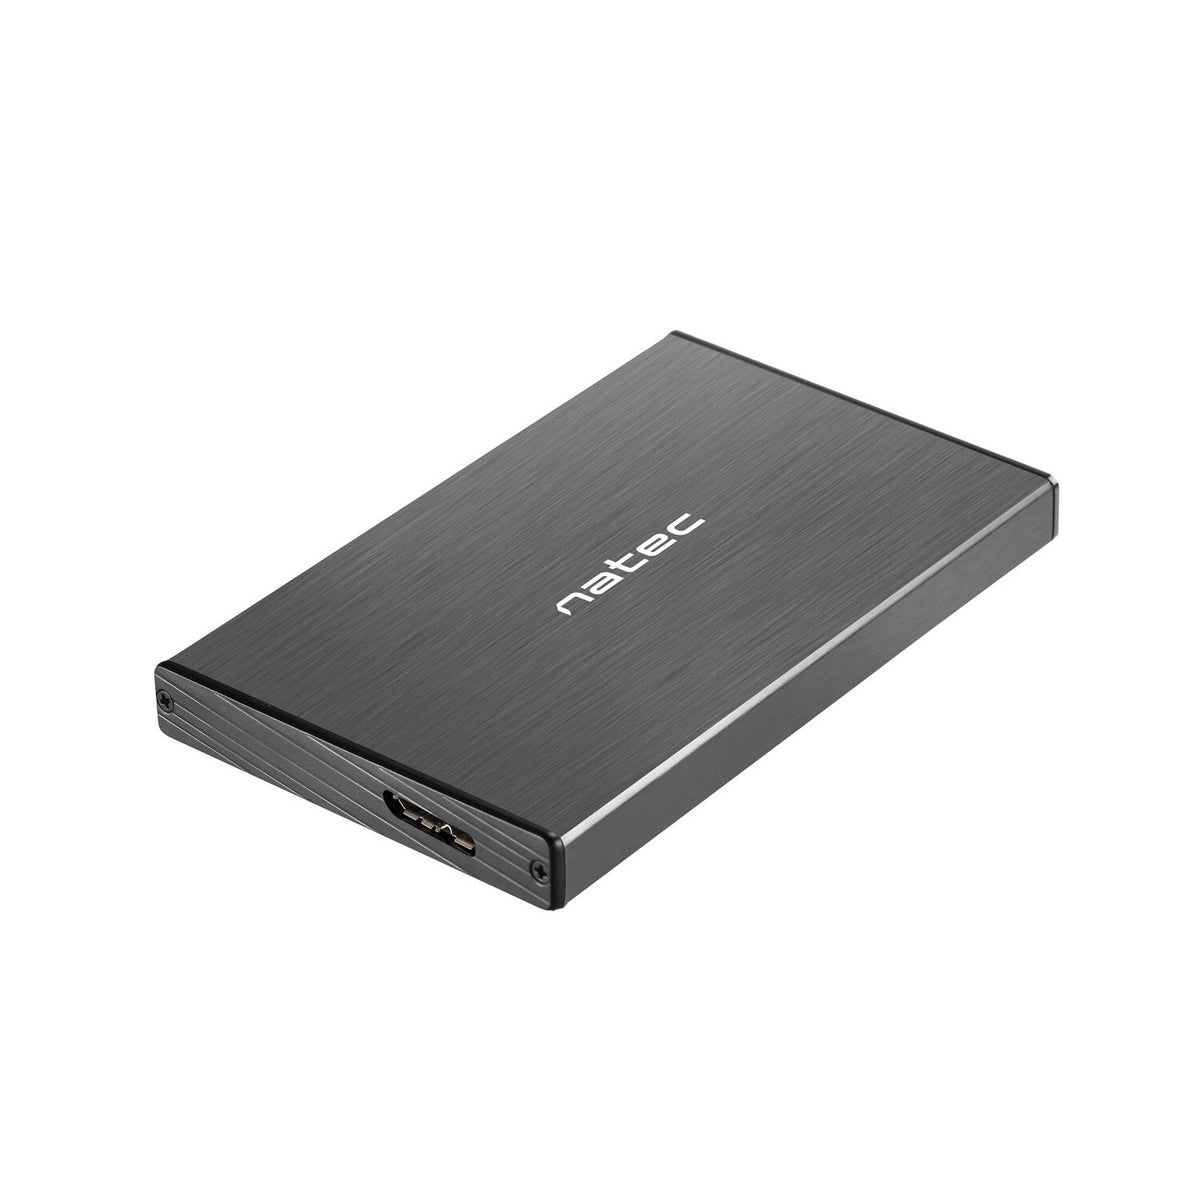 Externý box pre HDD 2,5'' USB 3.0 Natec Rhino Go, hliník, čierny